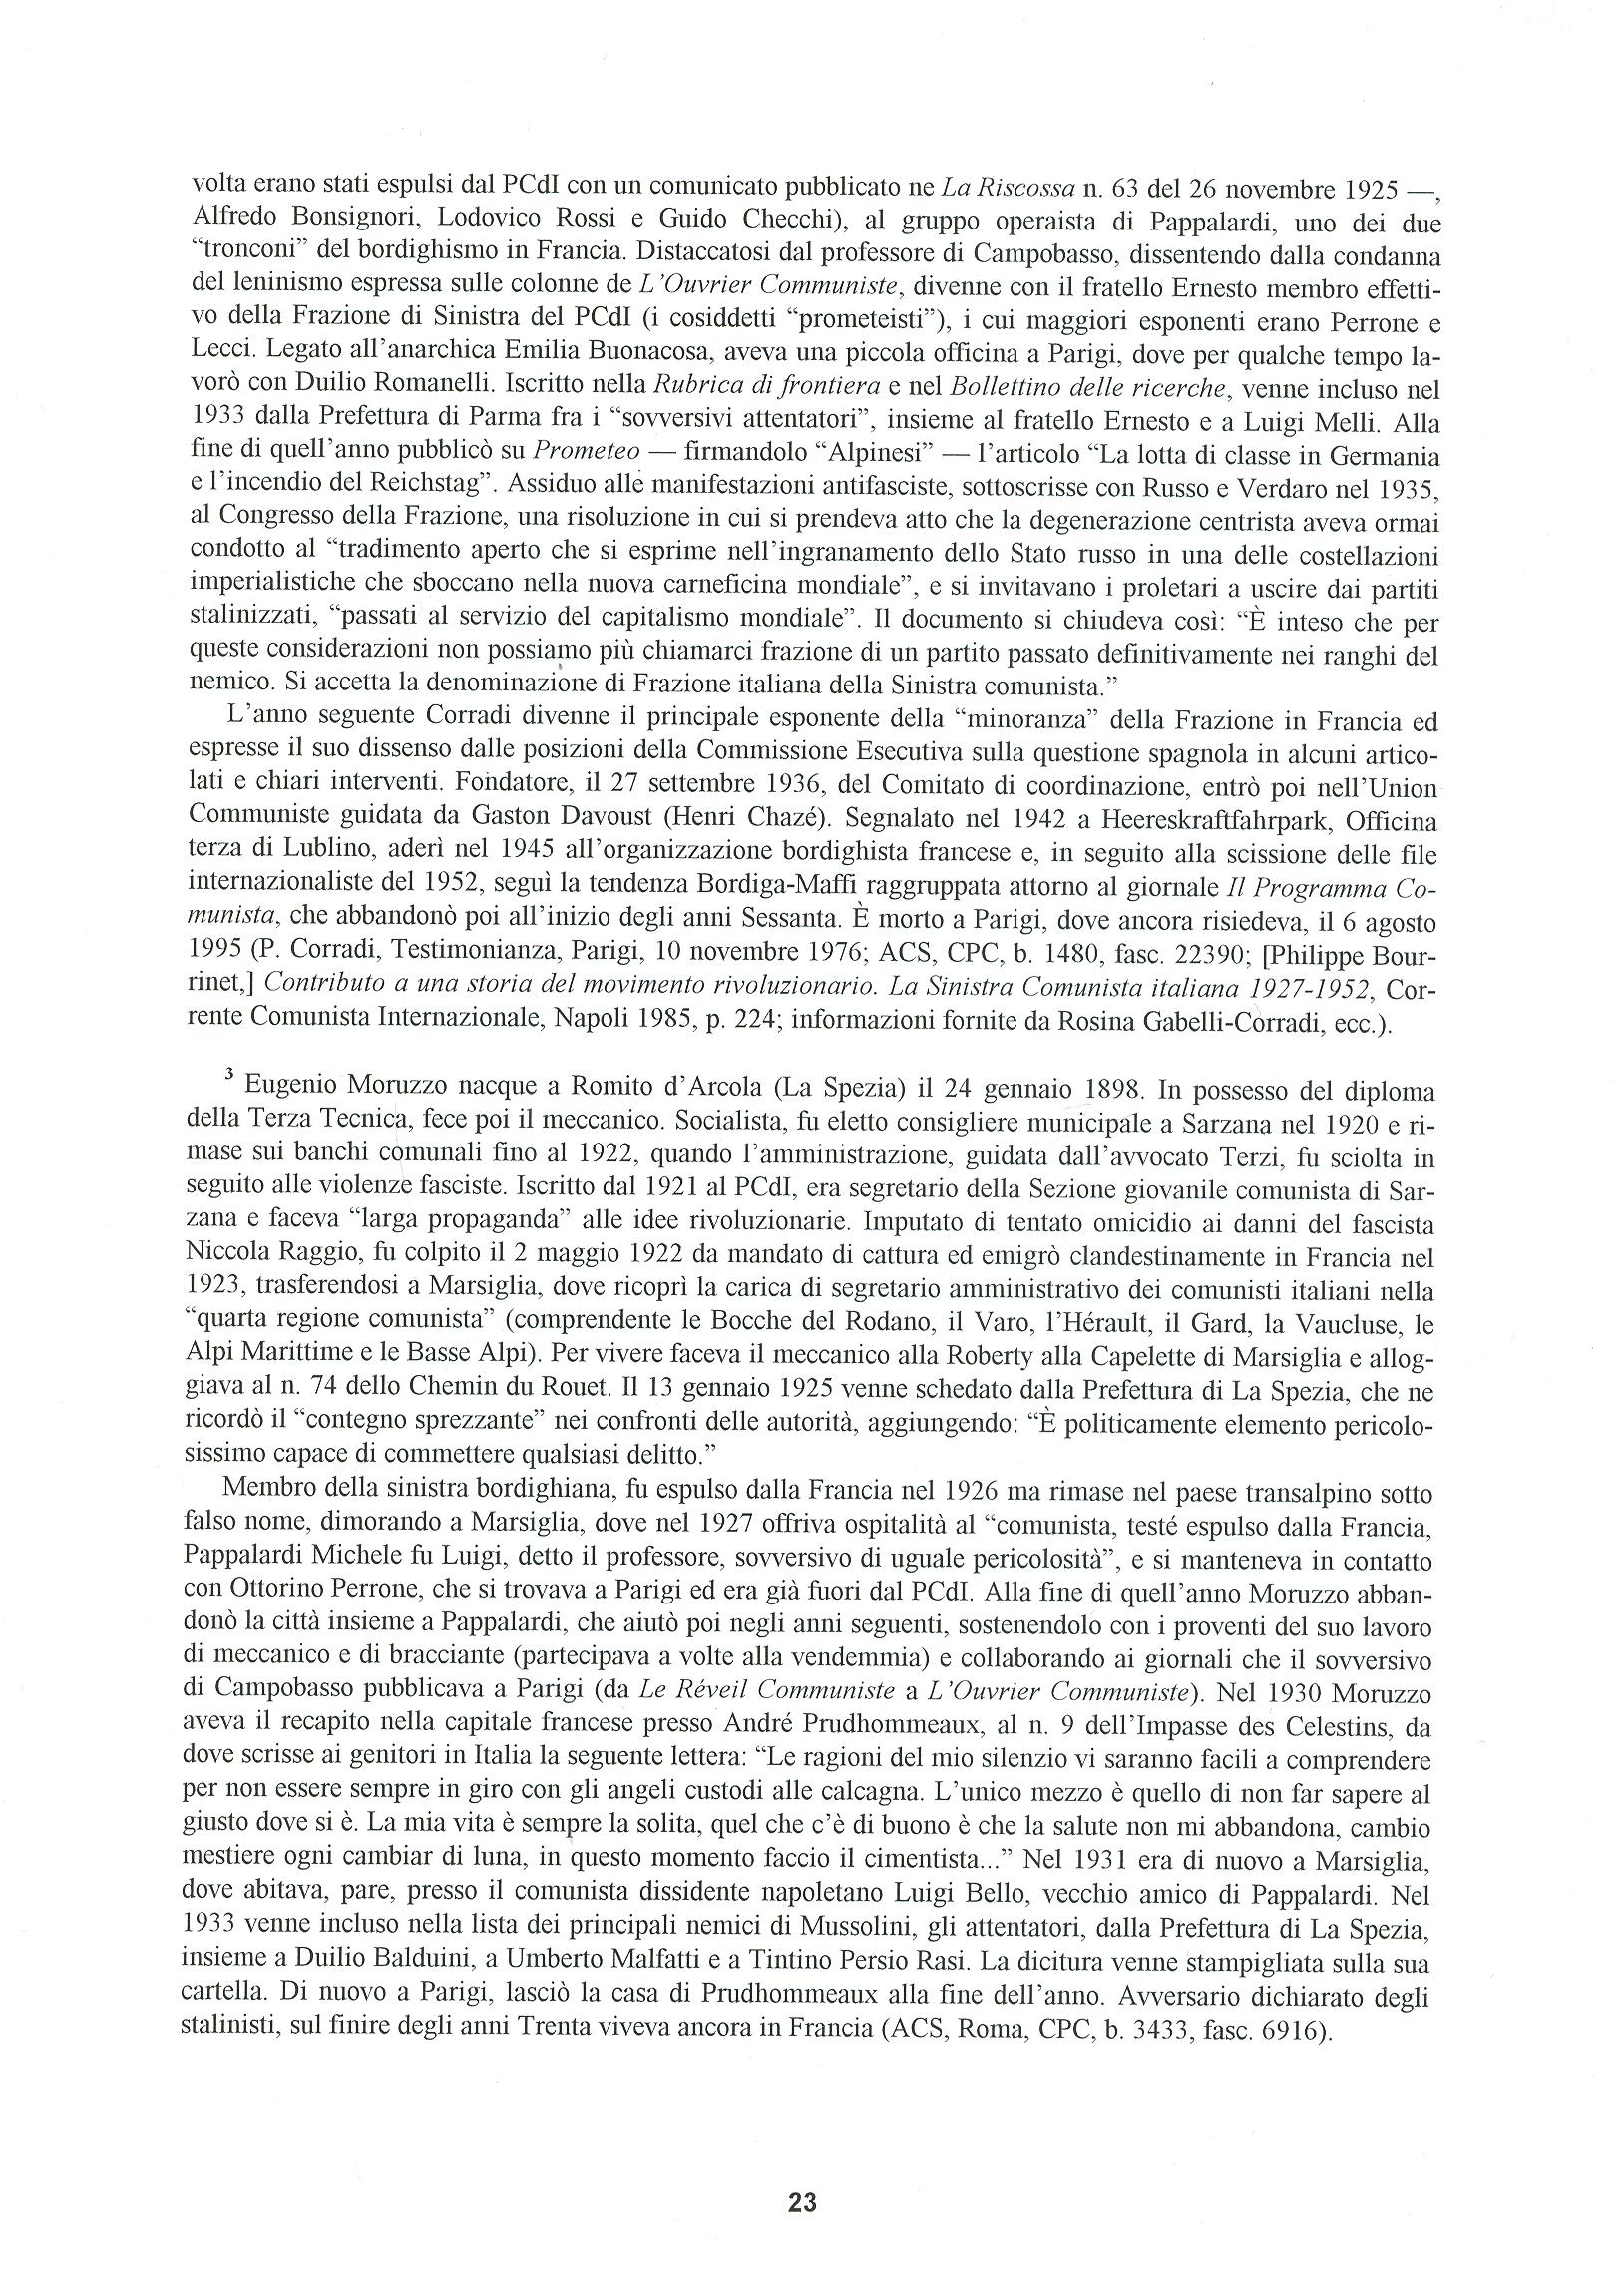 Quaderni del Centro Studi Pietro Tresso (1996-2009) n. 14 (novembre 1998) - pag. 24